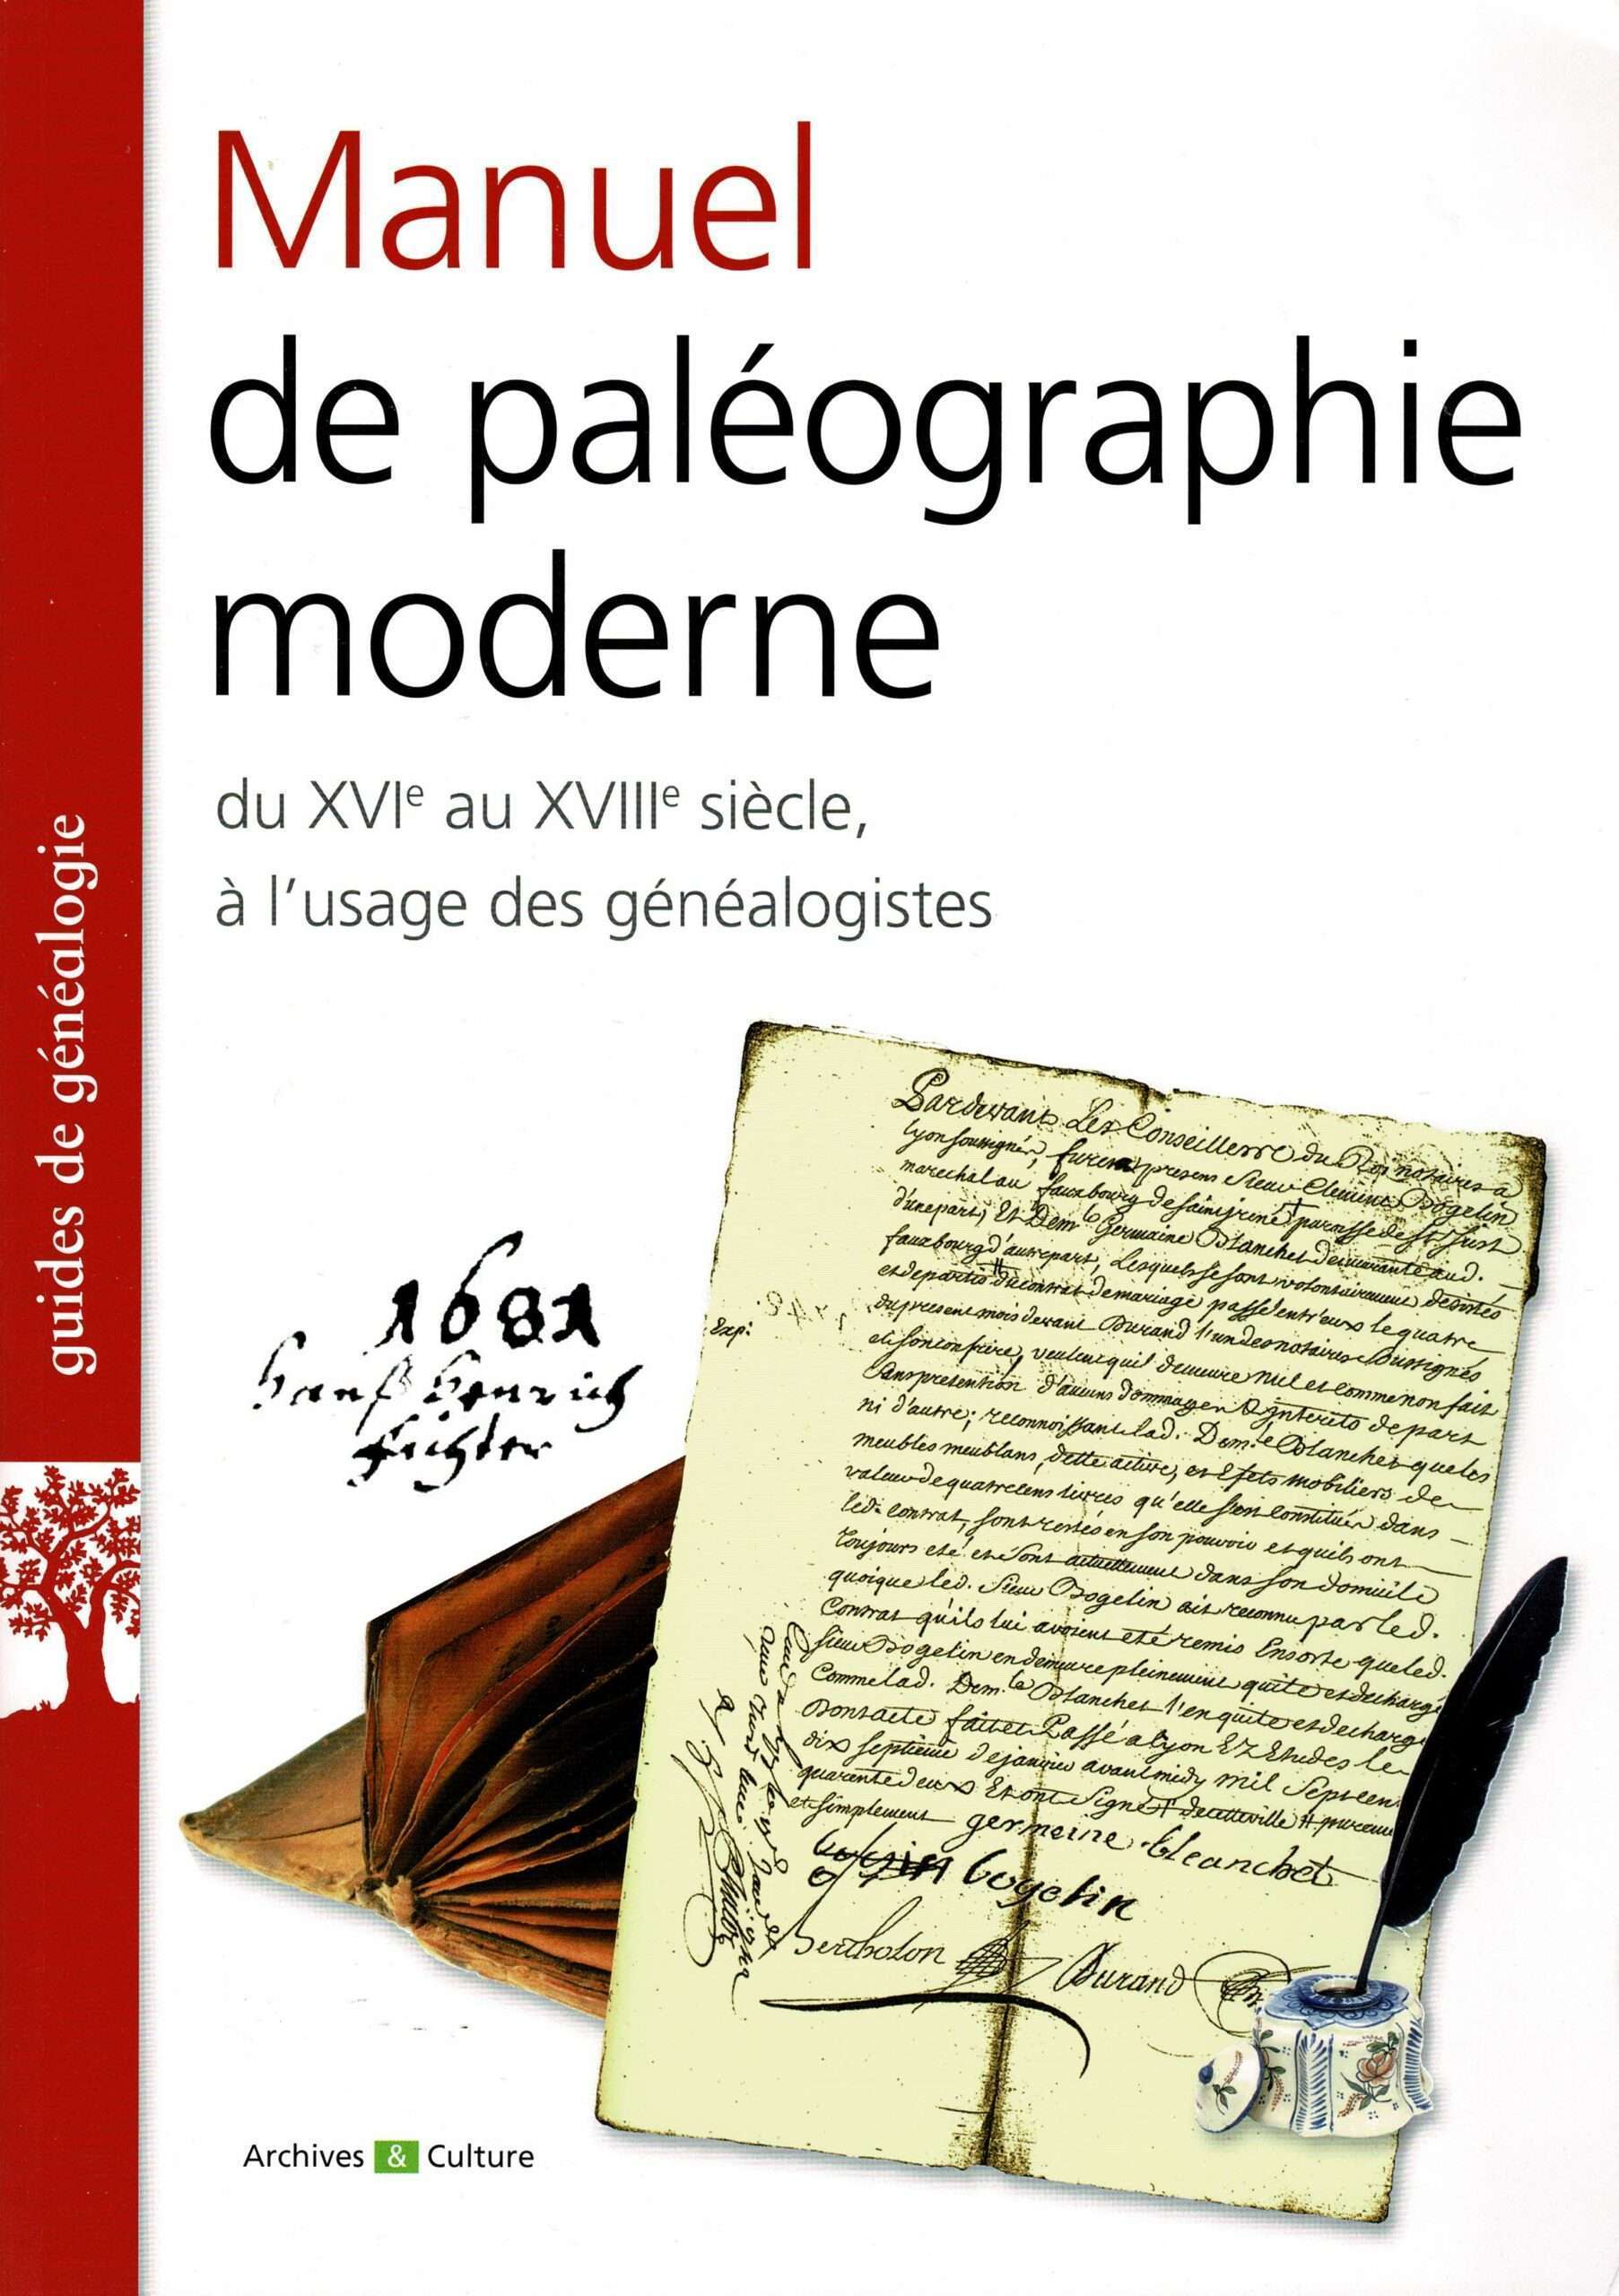 Manuel de paléographie moderne, du 16 au 18eme siècle